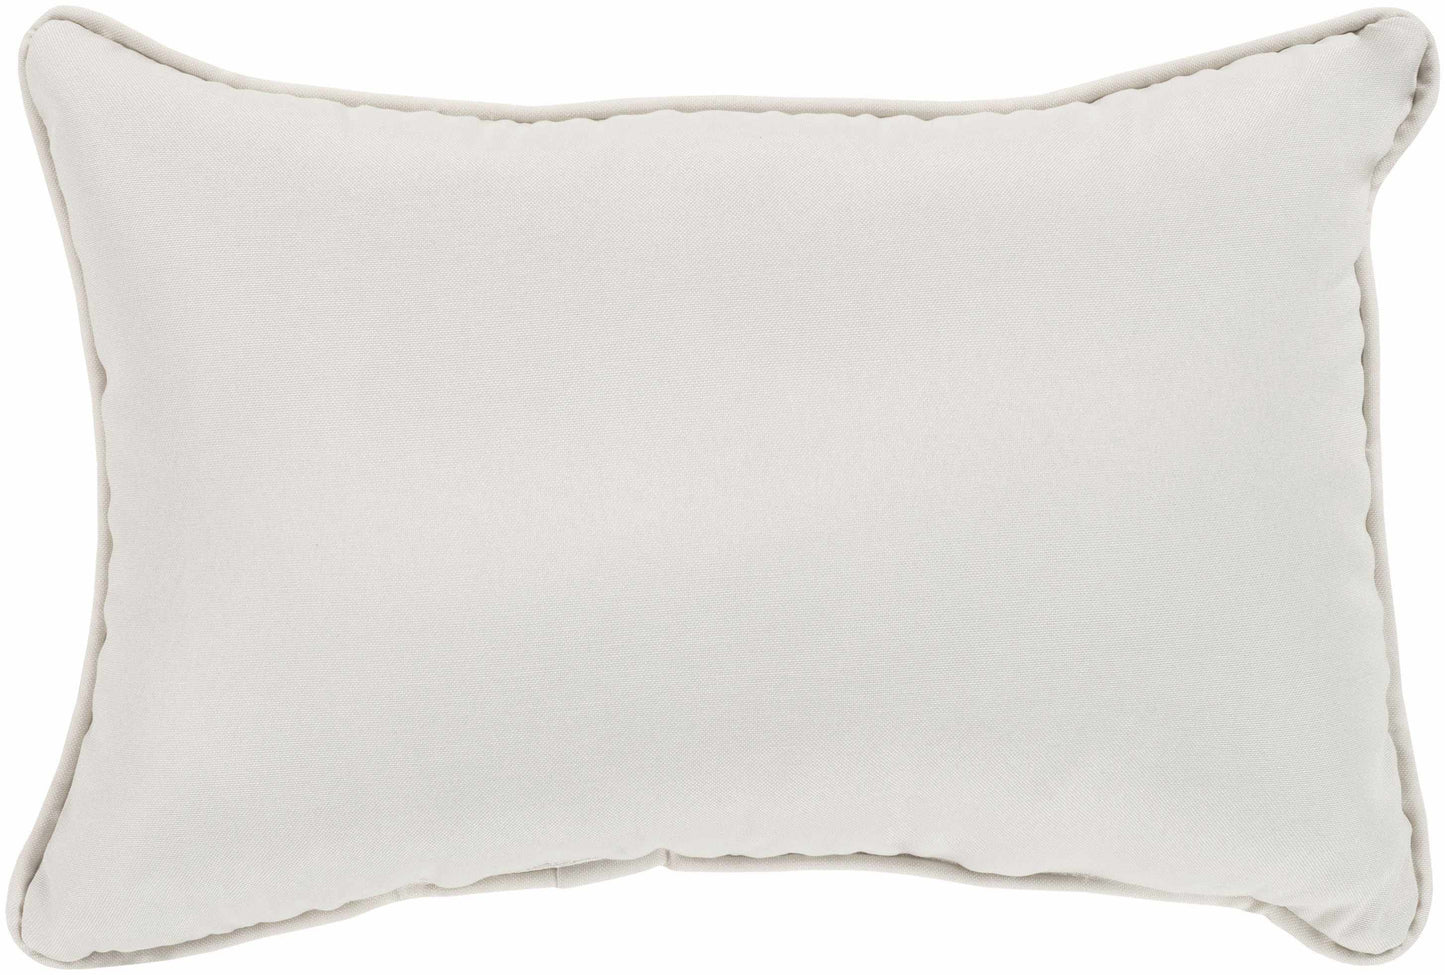 Zemst Ivory Pillow Cover